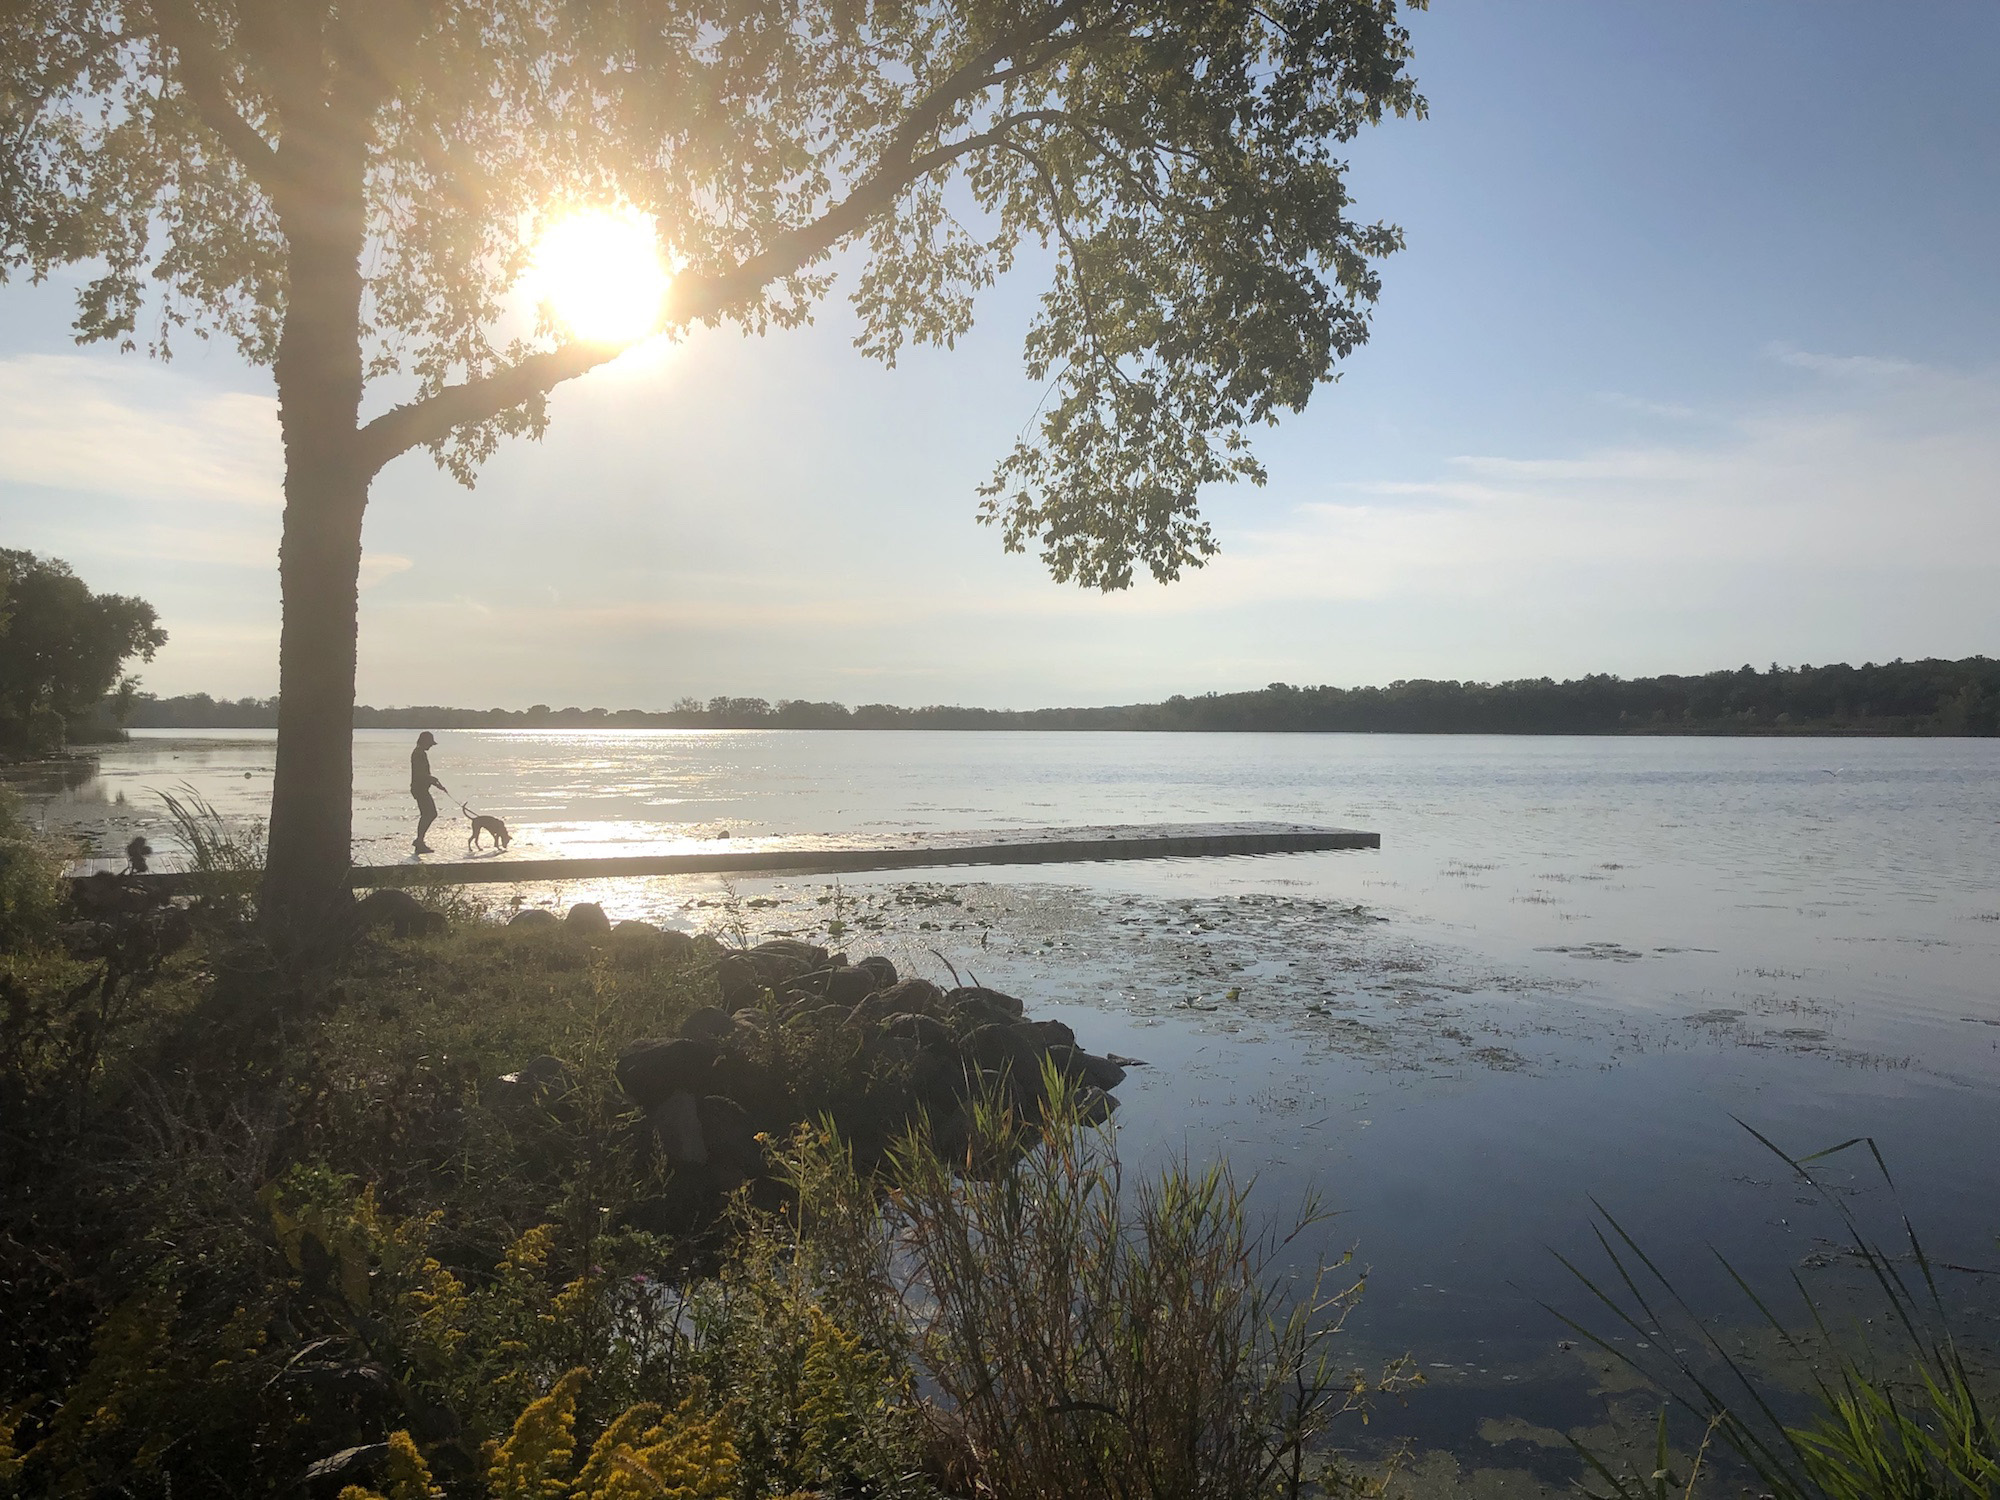 Lake Wingra on September 15, 2019.